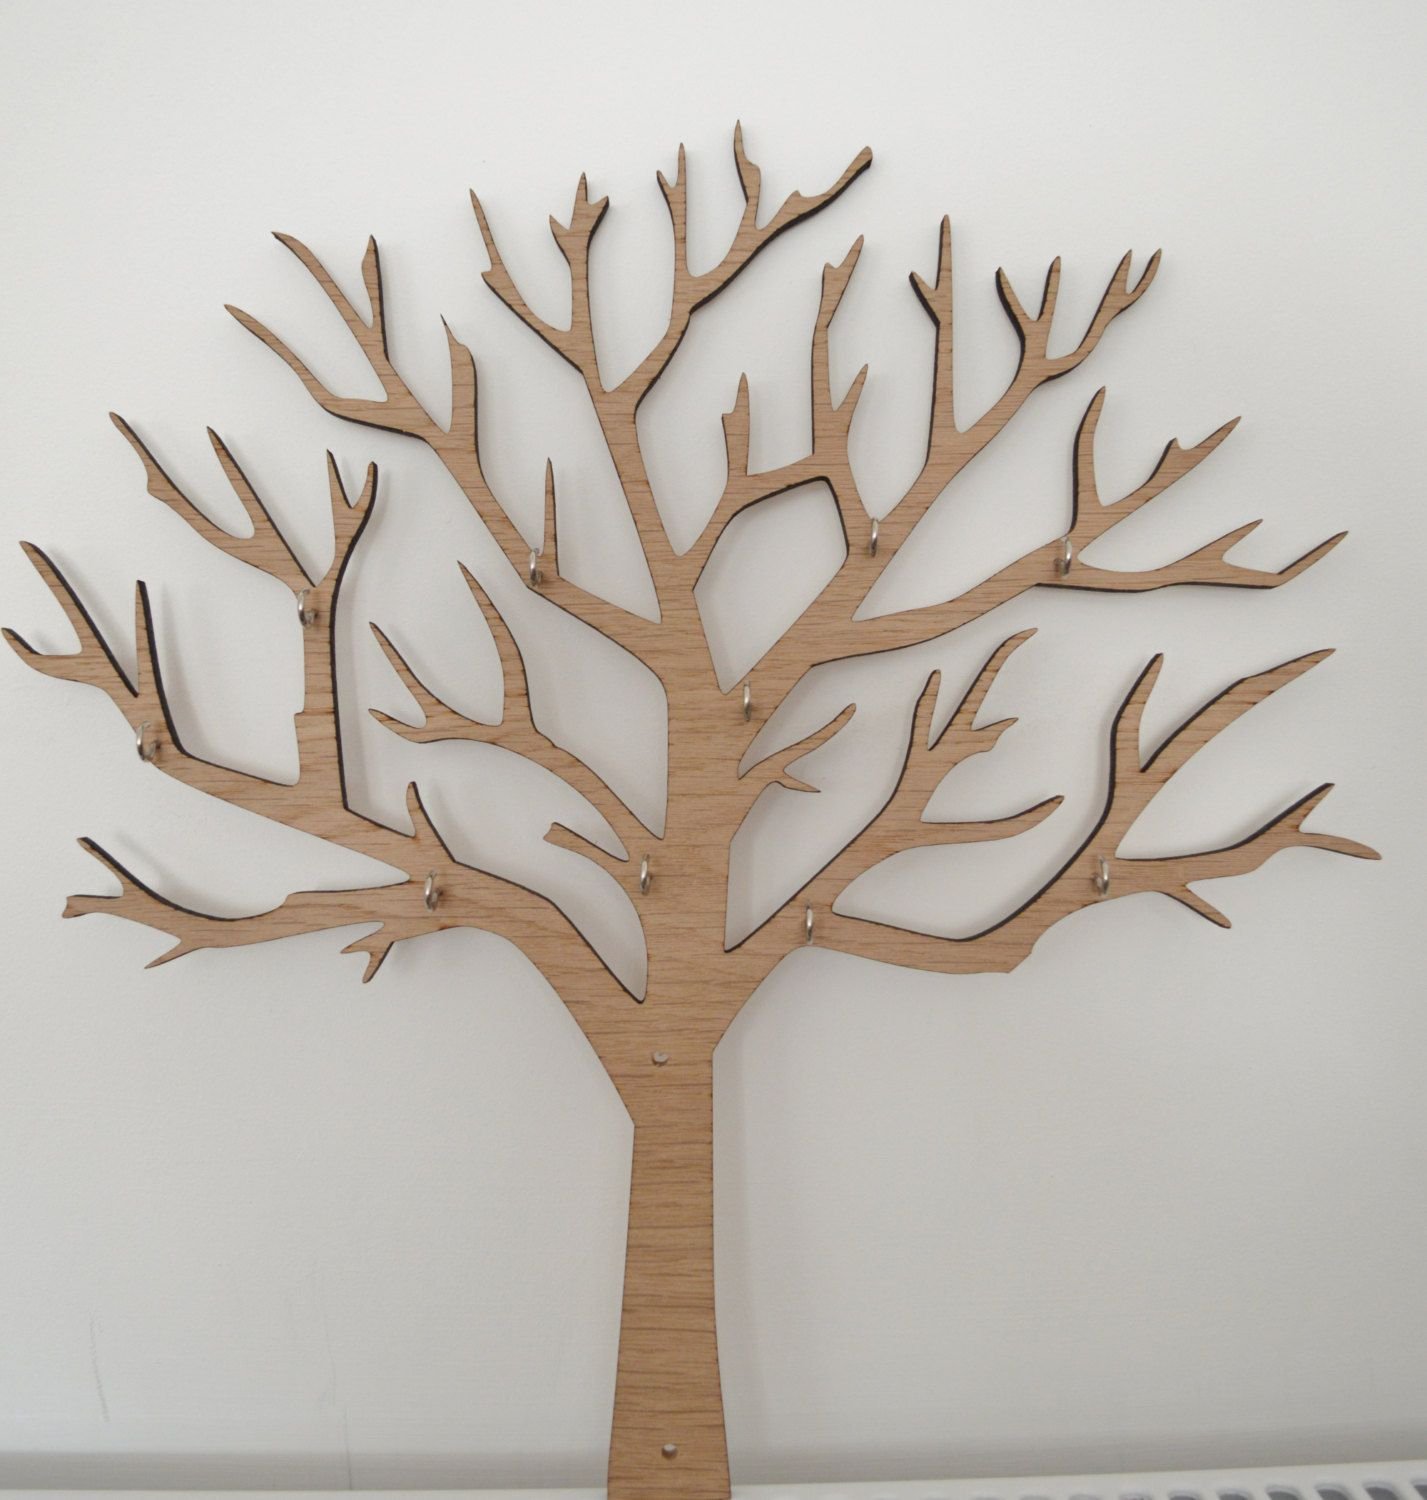 Дерево на стене — отличная идея для украшения интерьера